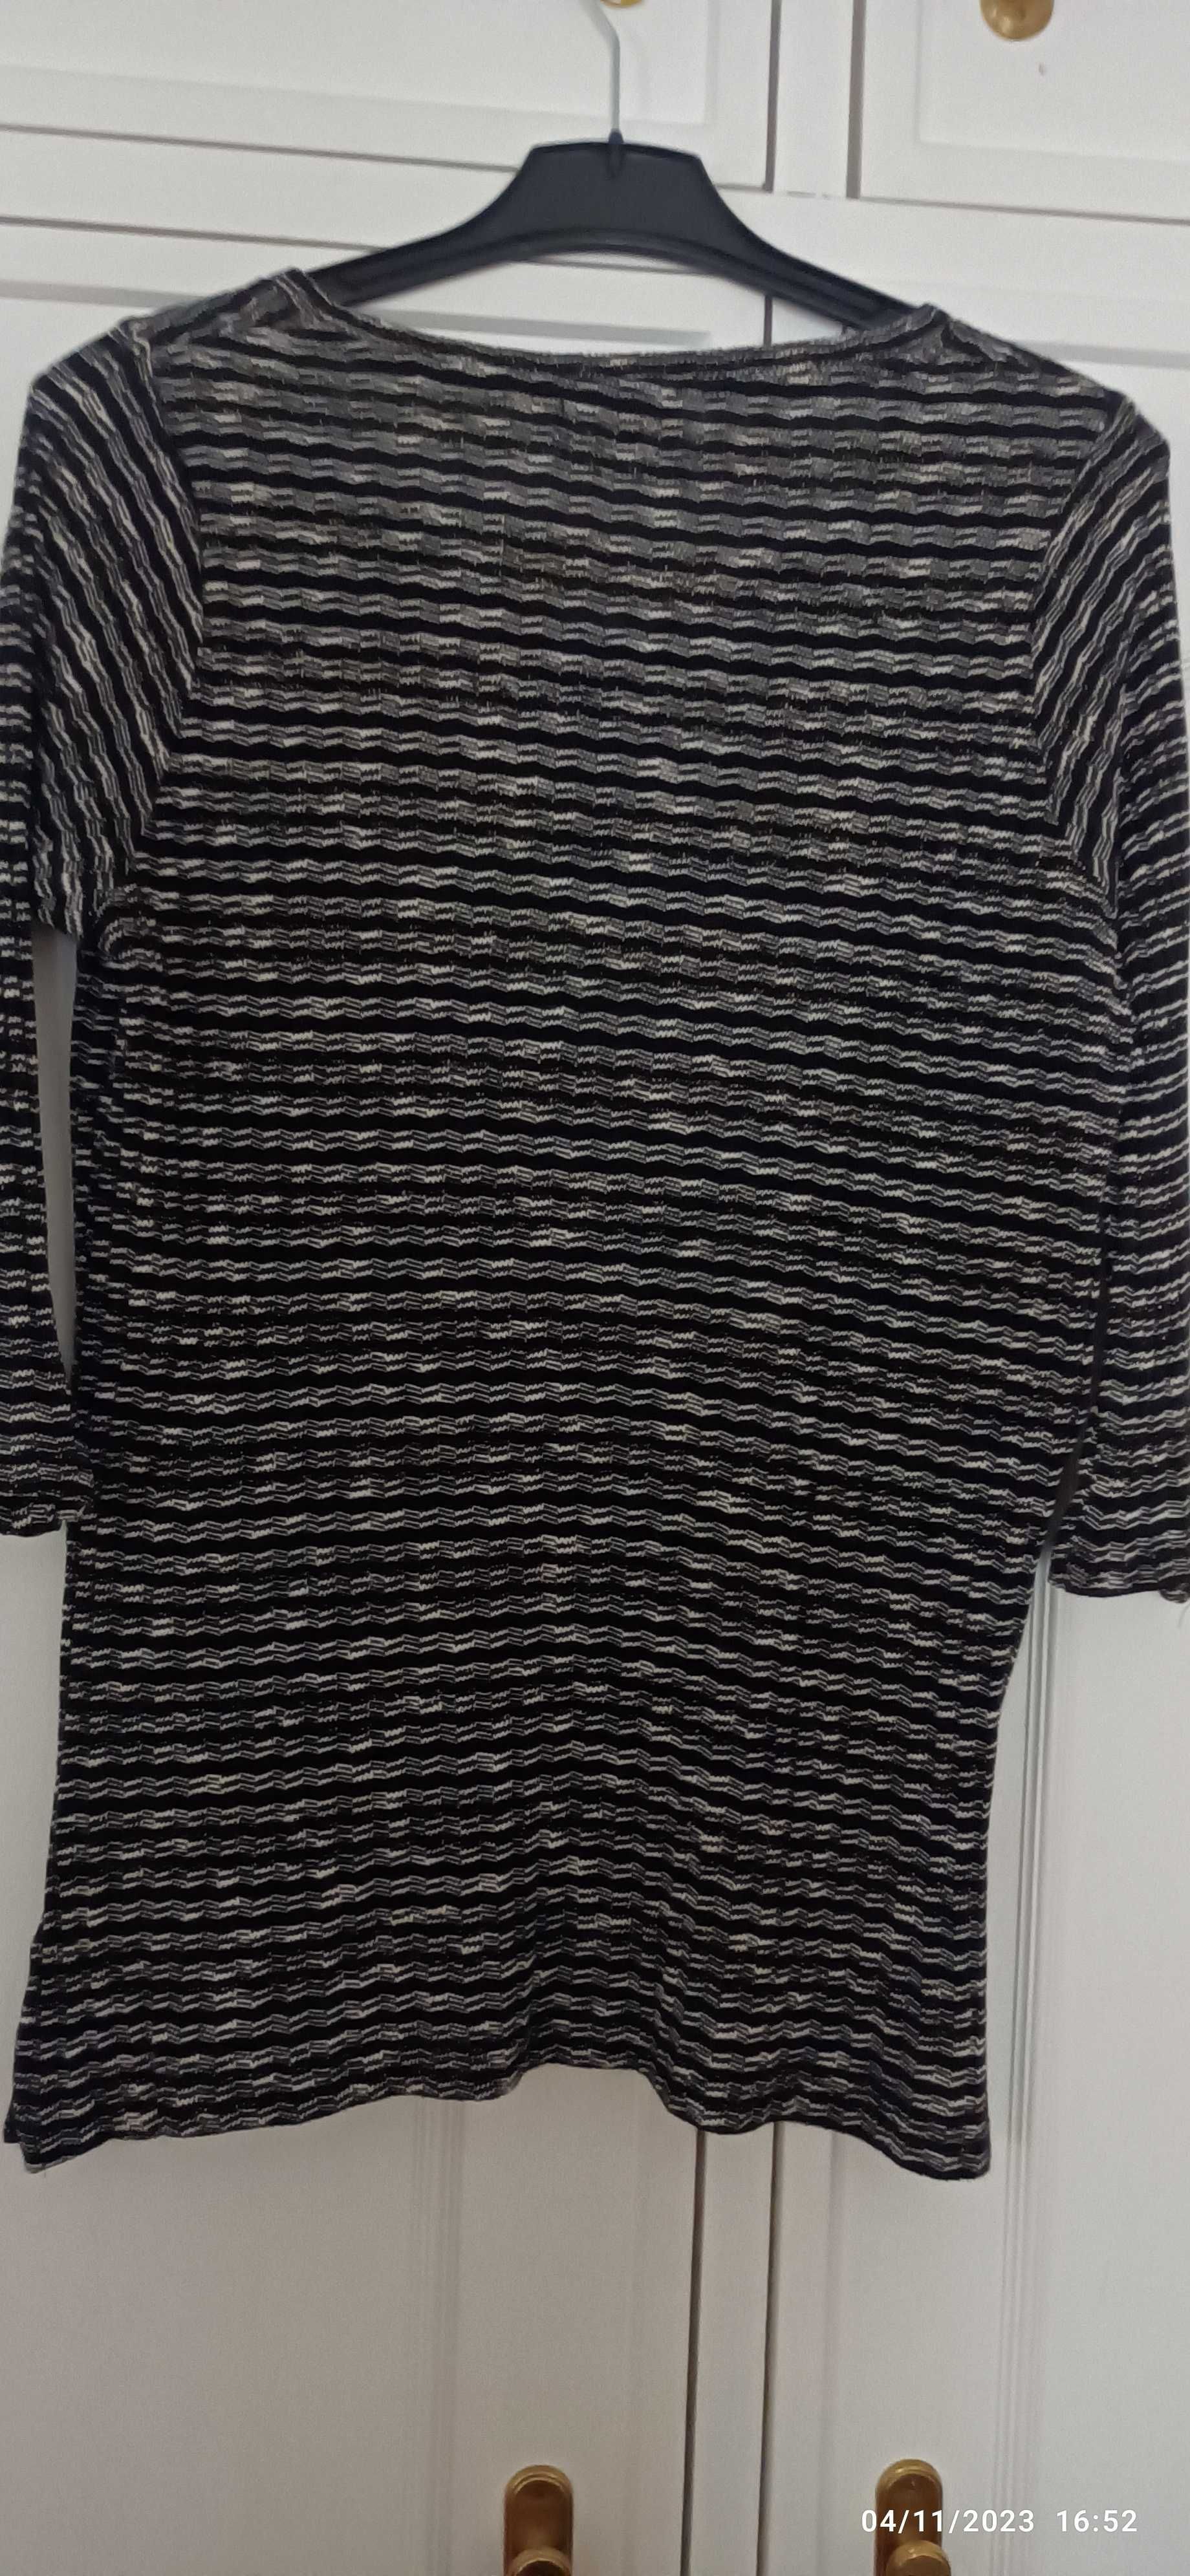 Camisola de malha de algodão e viscose, com linha prateada